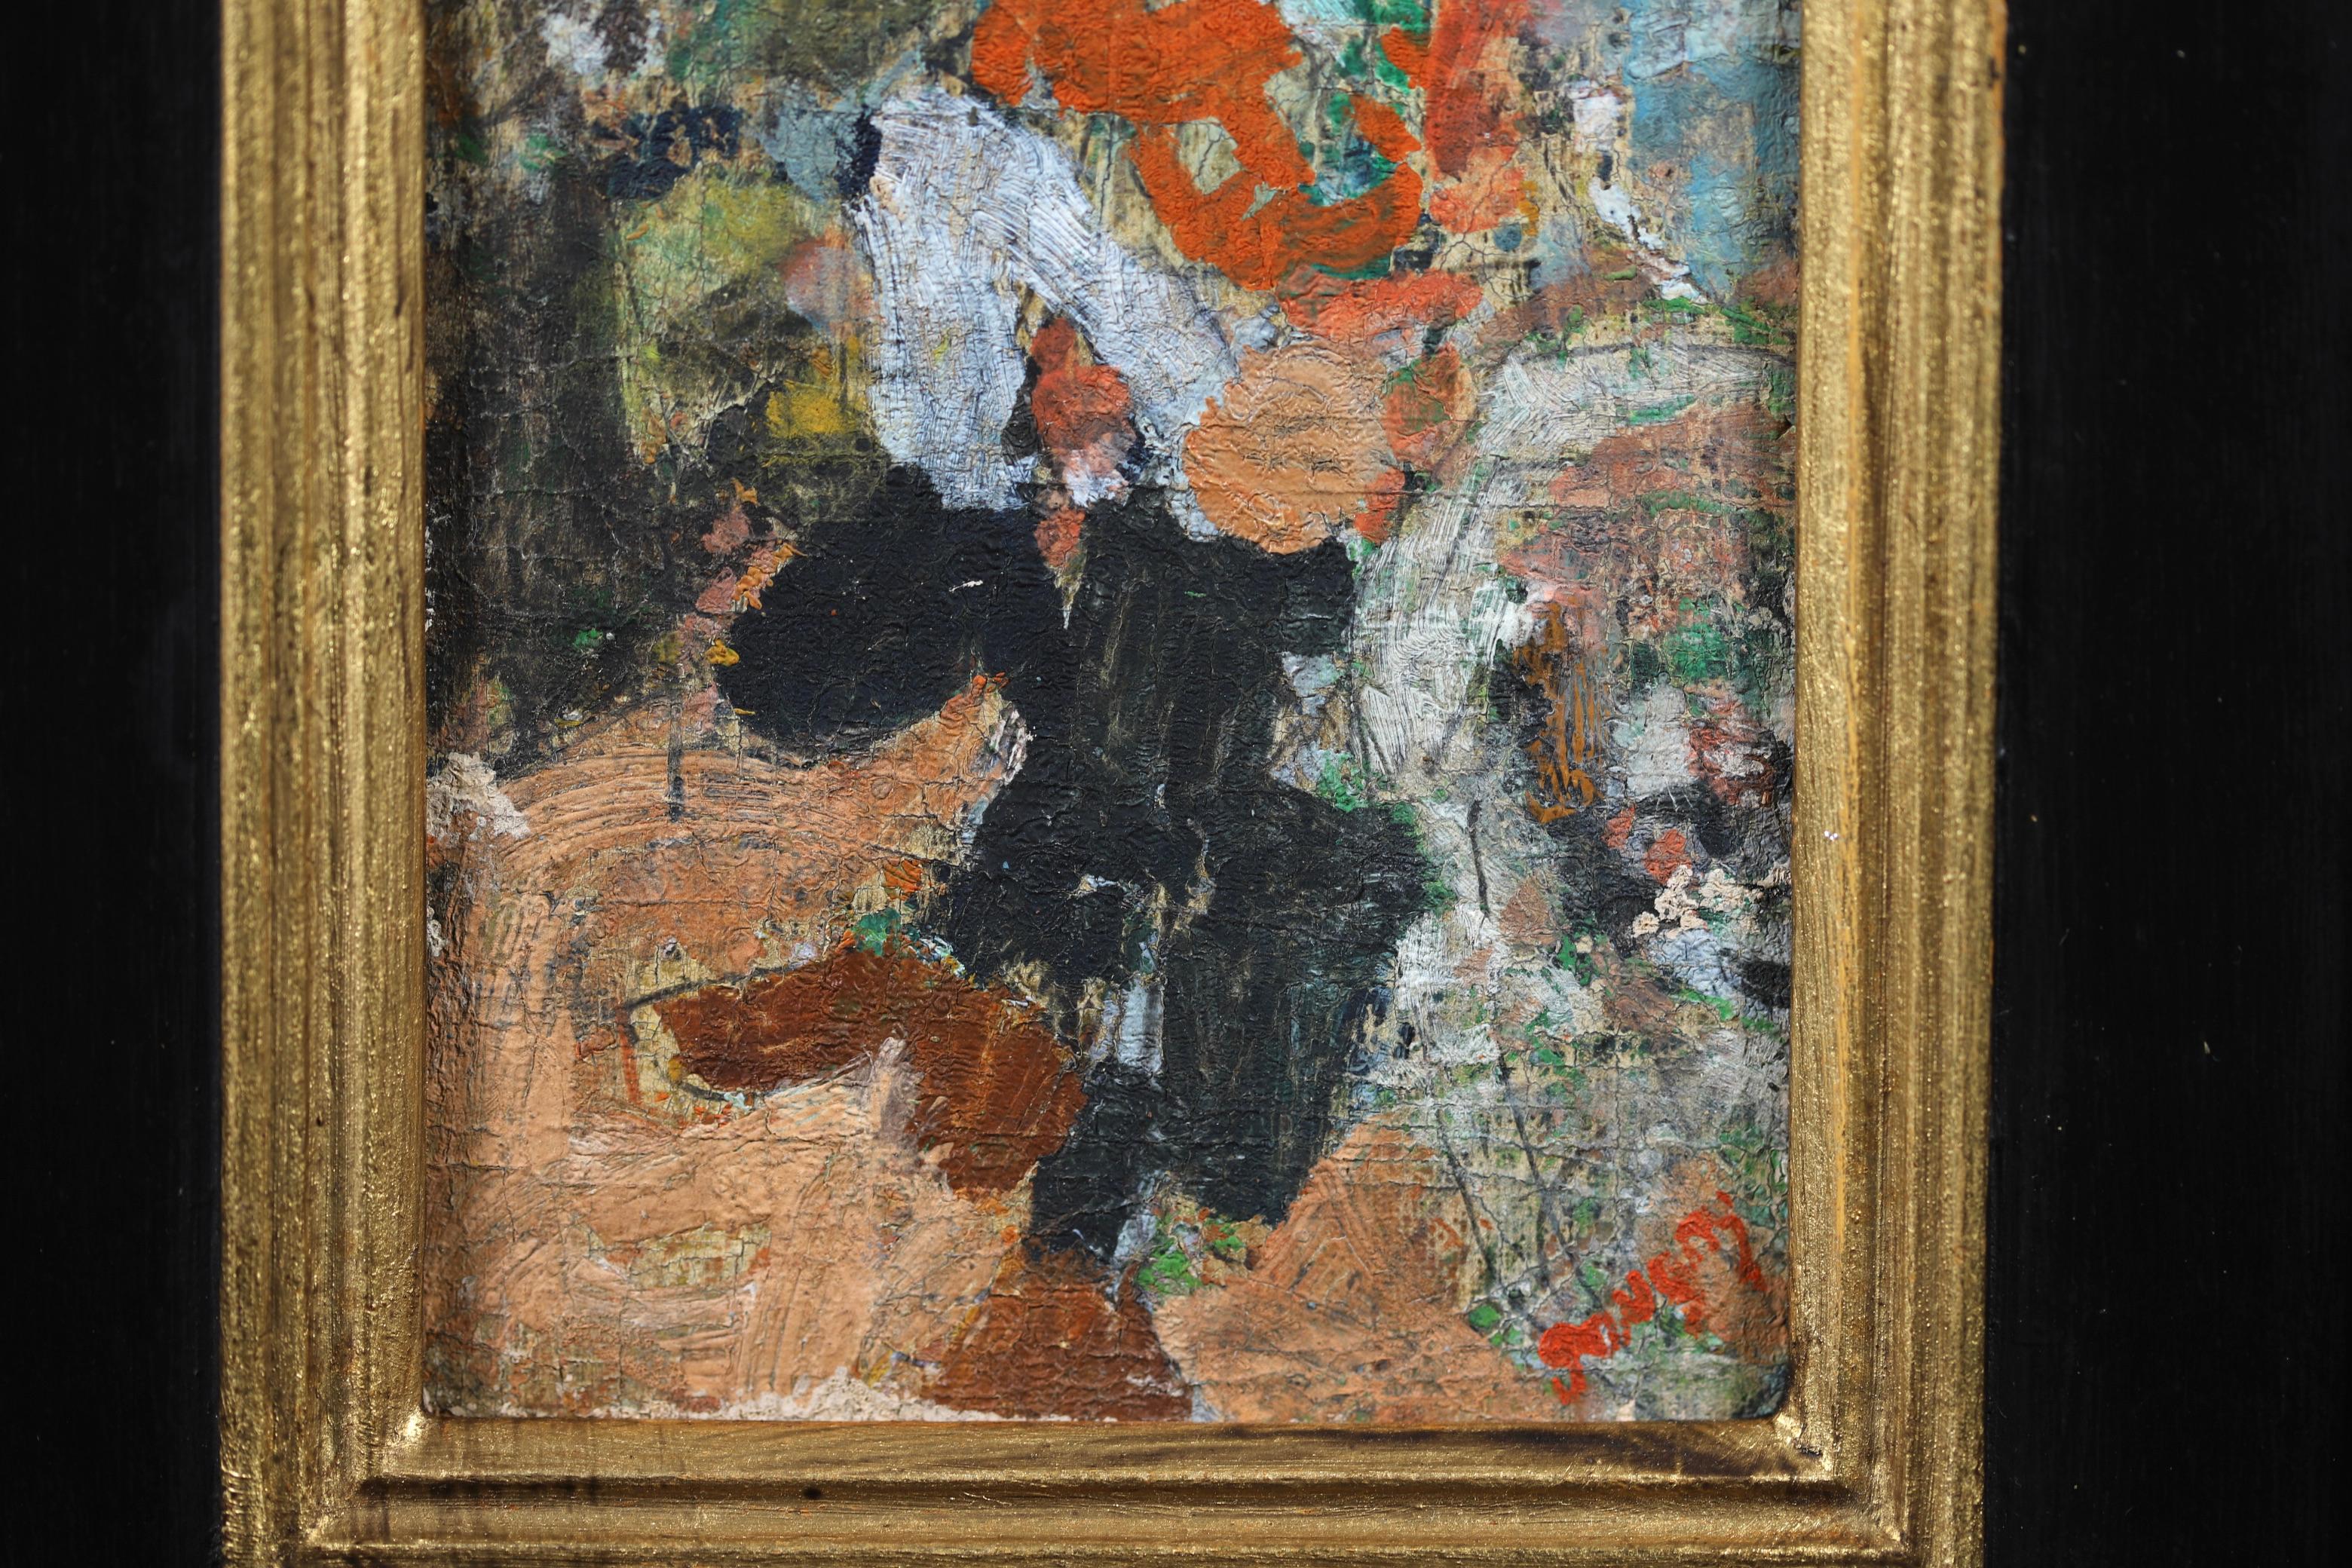 Signiertes expressionistisches Porträt in Öl auf Leinwand, circa 1942, des französischen Malers Jean Albert Pougny. Das Werk zeigt einen Geiger in einem Interieur. 

Unterschrift
Signiert unten rechts

Abmessungen:
Gerahmt: 13,5 